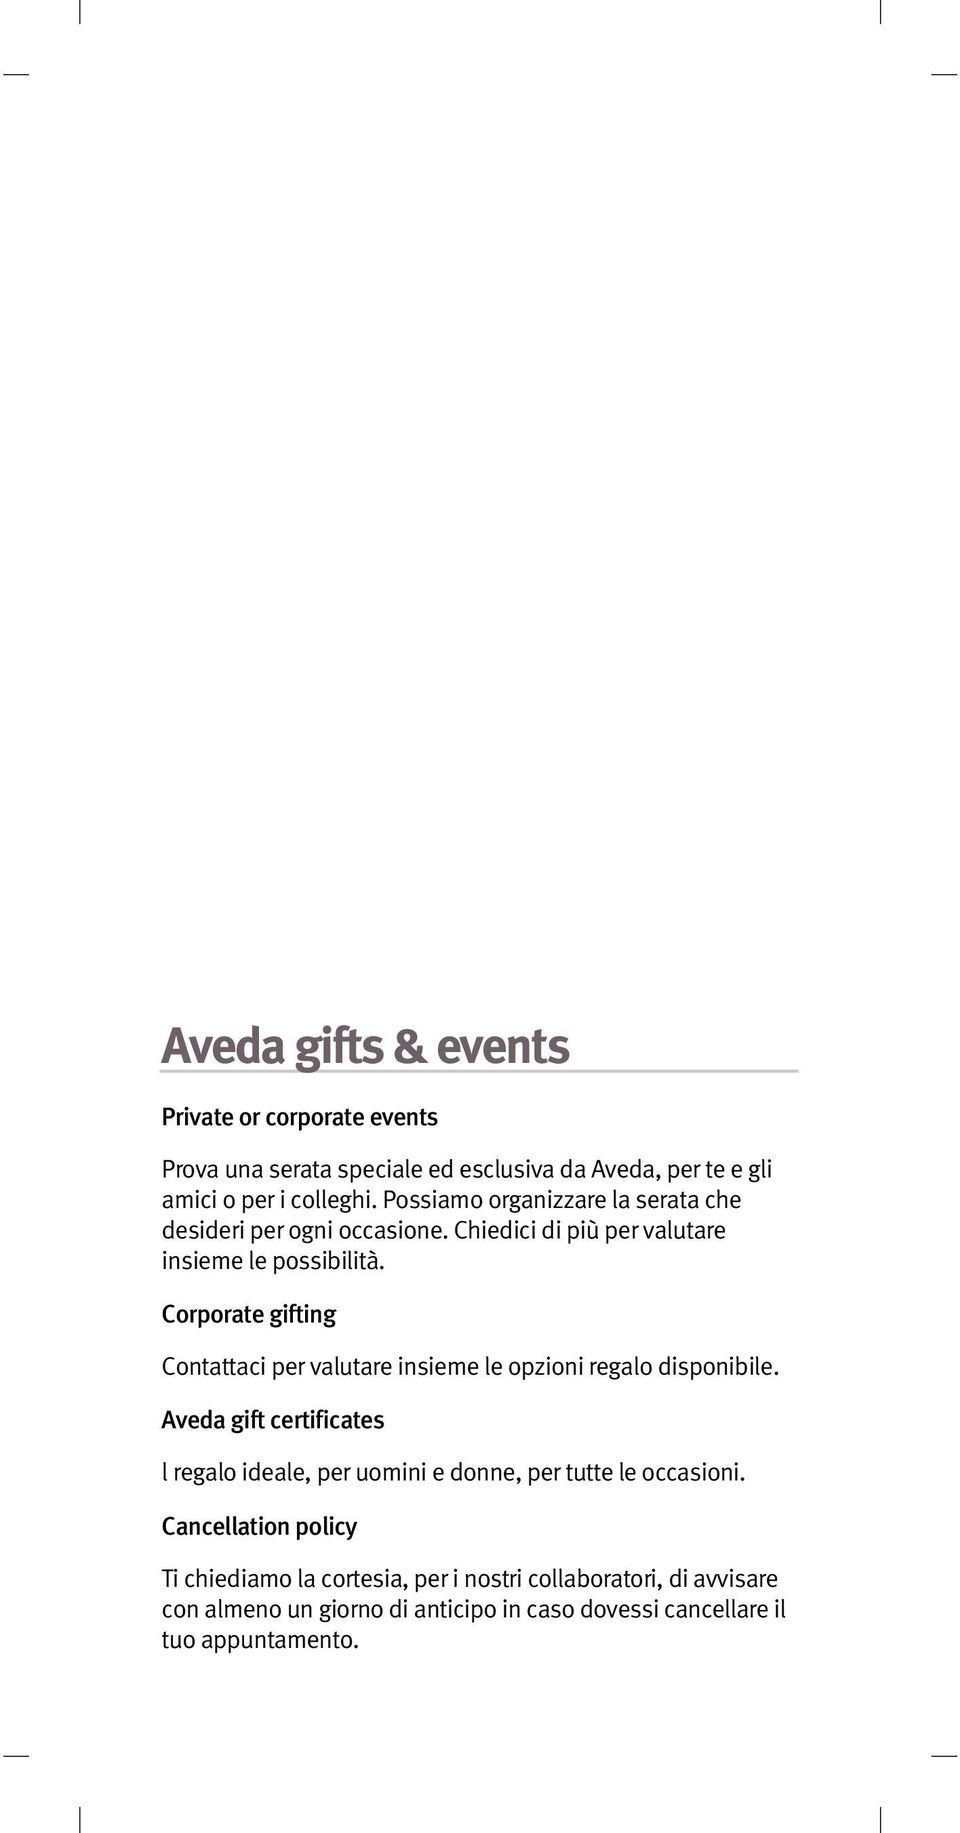 Corporate gifting Contattaci per valutare insieme le opzioni regalo disponibile.